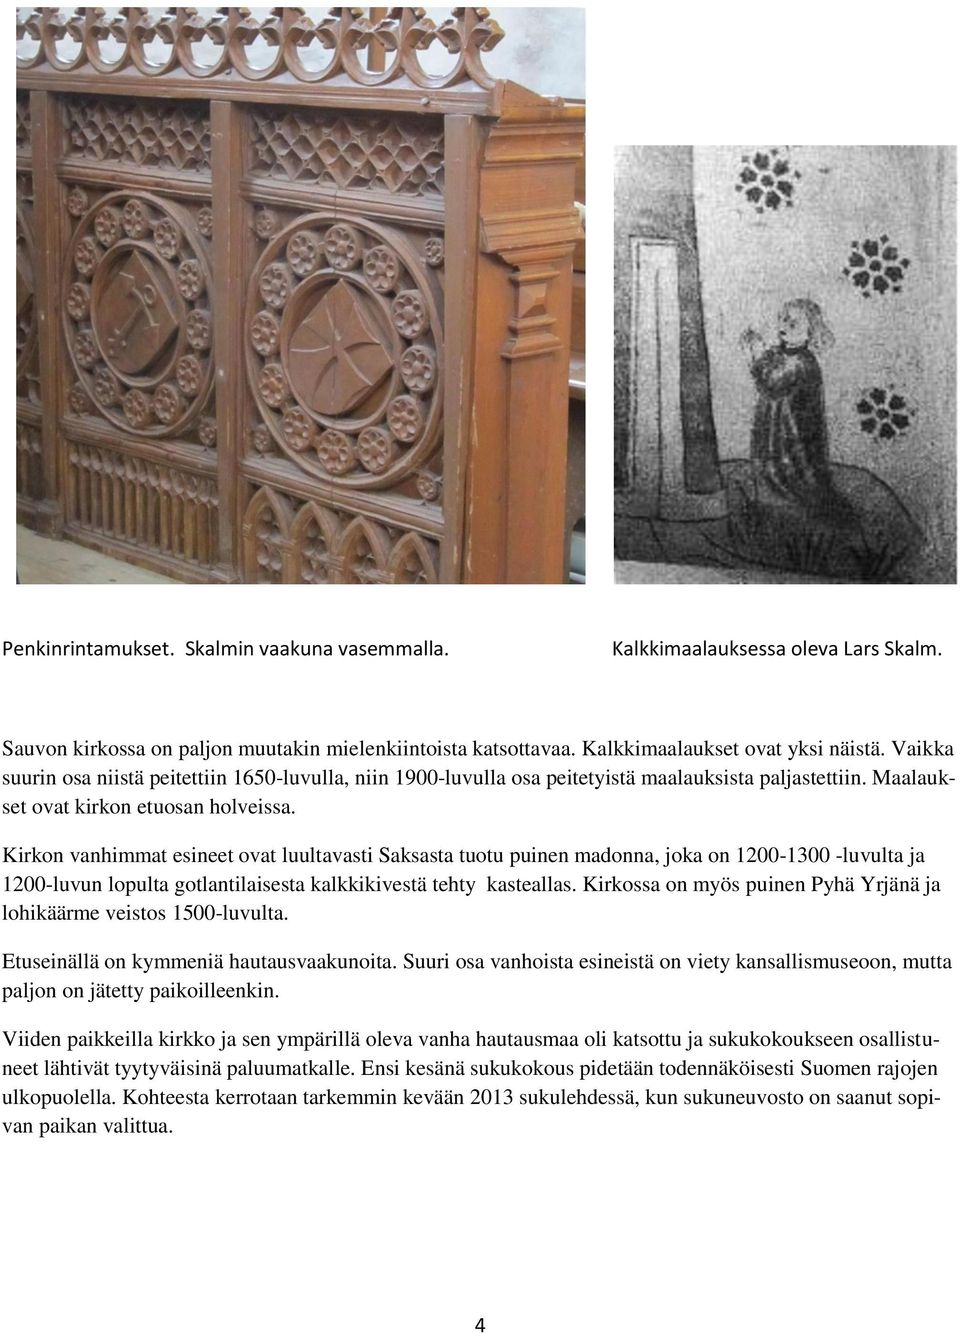 Kirkon vanhimmat esineet ovat luultavasti Saksasta tuotu puinen madonna, joka on 1200-1300 -luvulta ja 1200-luvun lopulta gotlantilaisesta kalkkikivestä tehty kasteallas.